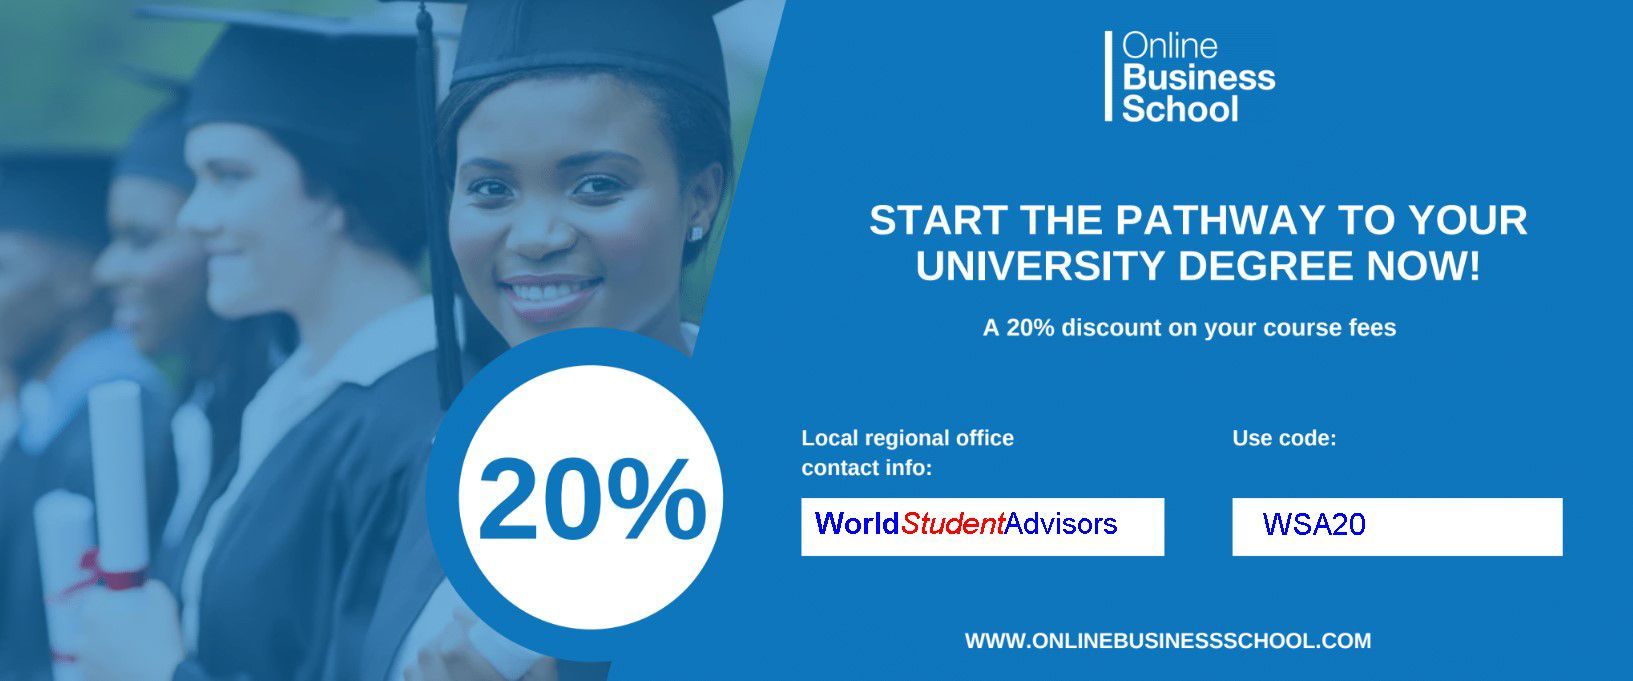 Online Business School Undergraduate